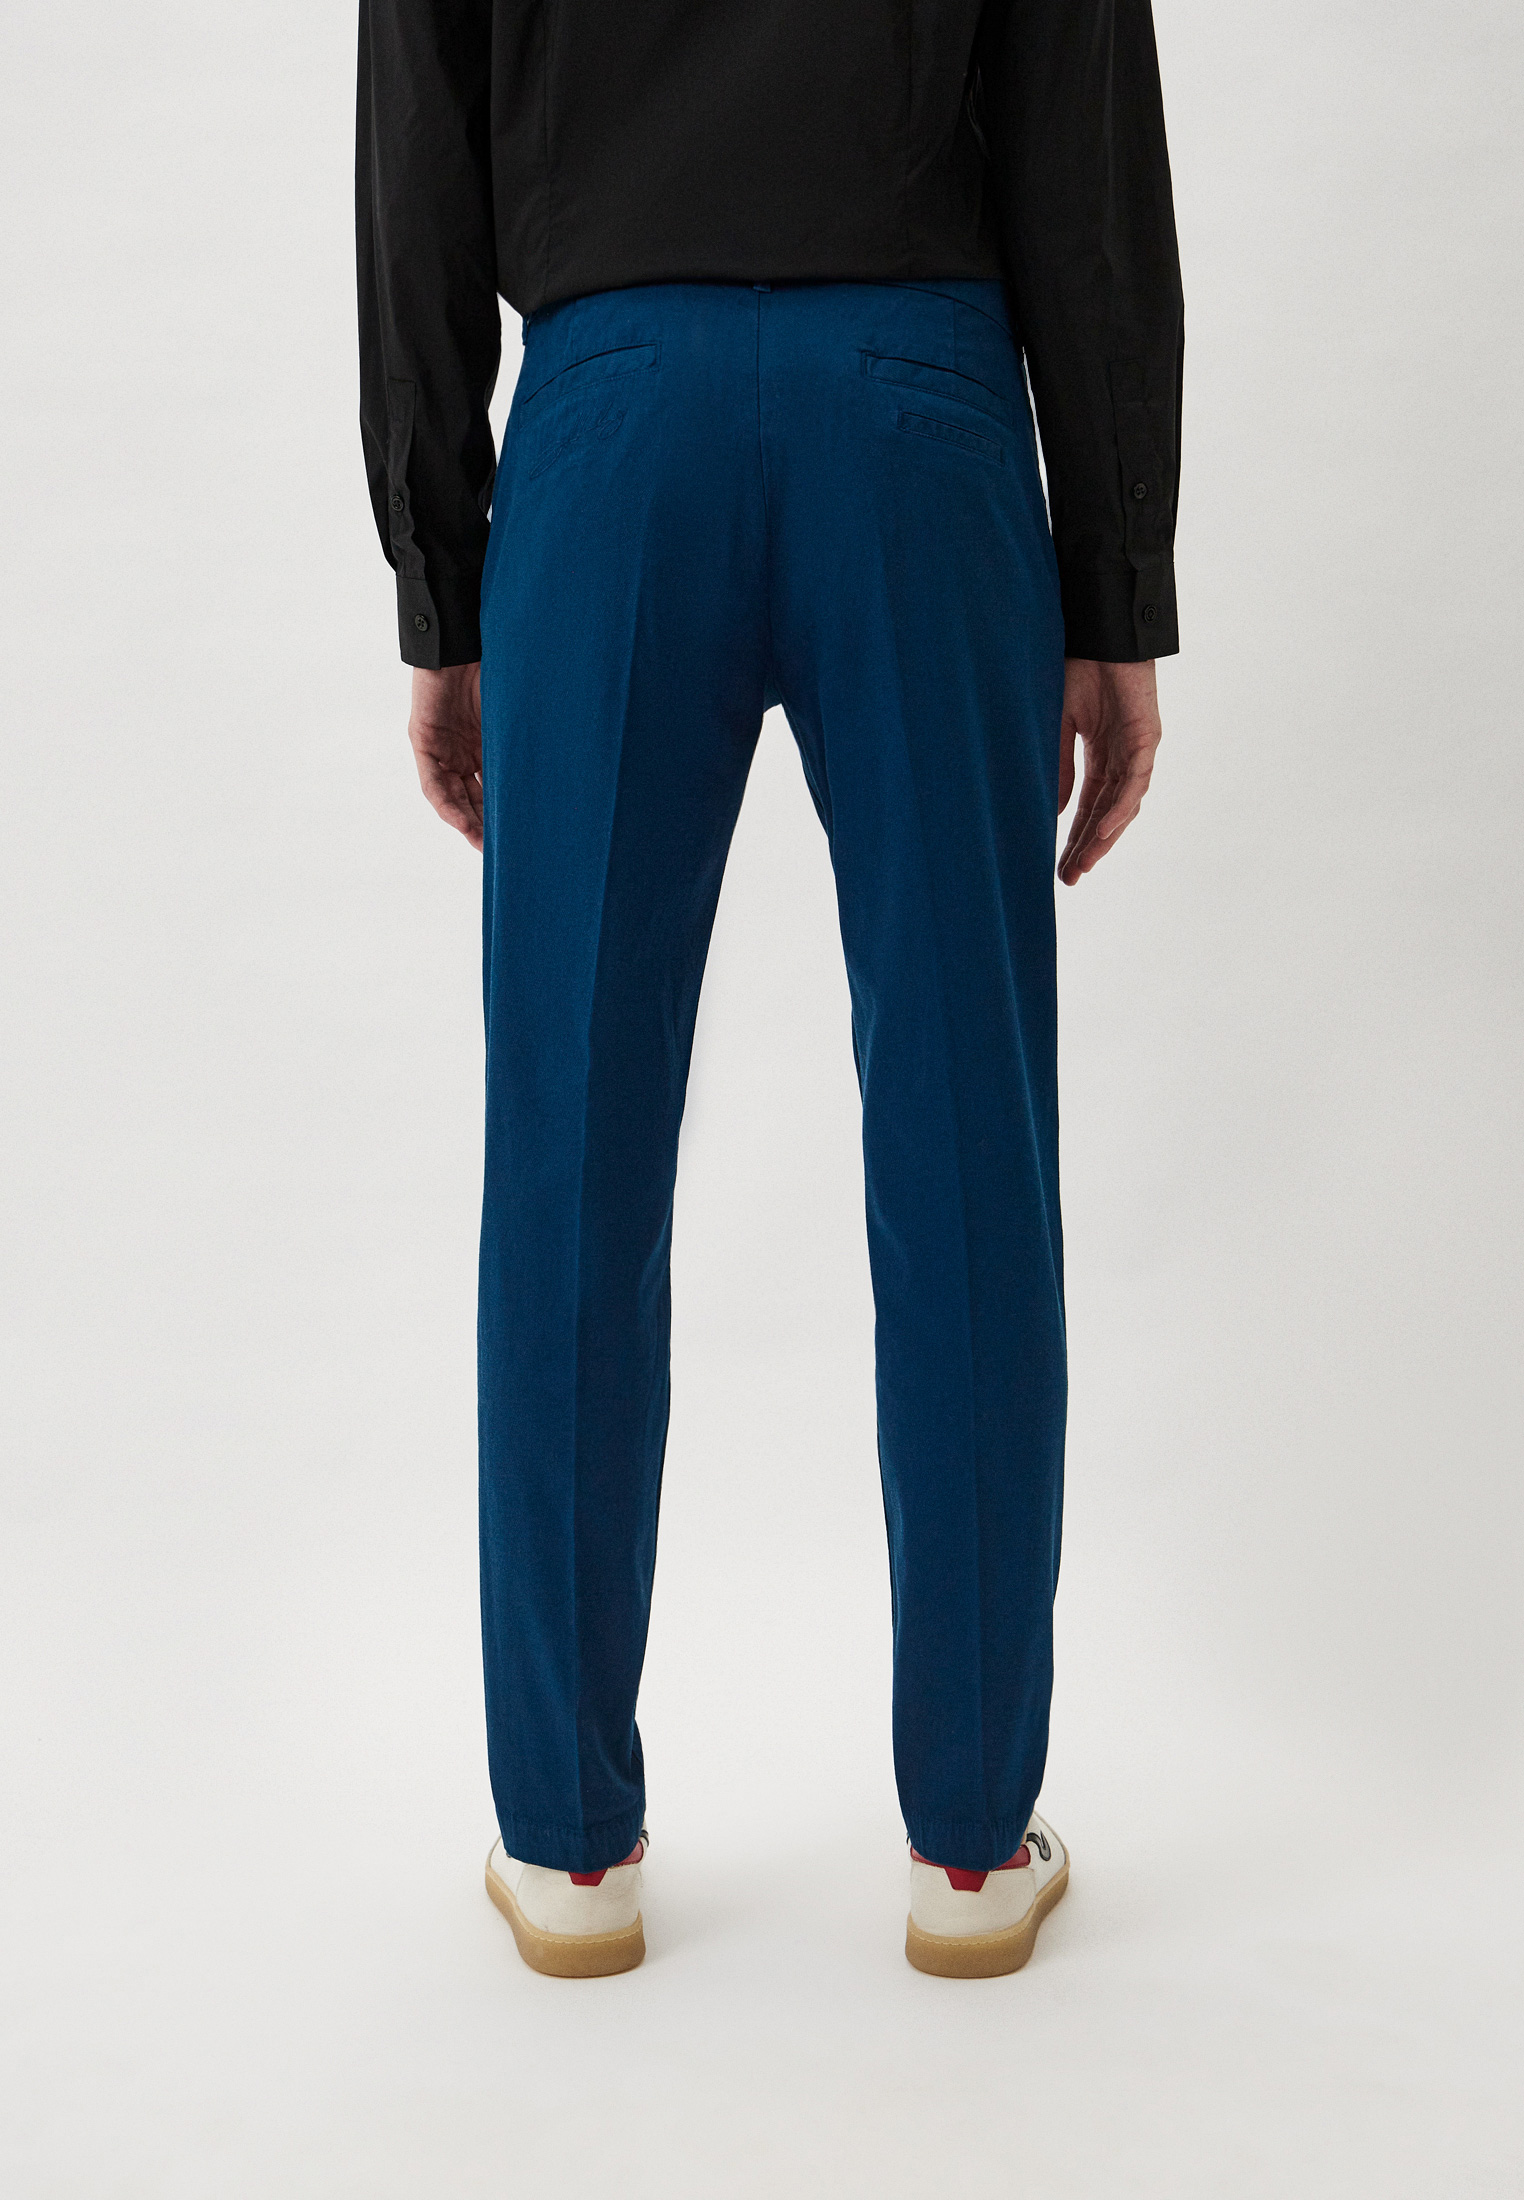 Мужские повседневные брюки Bikkembergs (Биккембергс) CP13201S3967: изображение 3